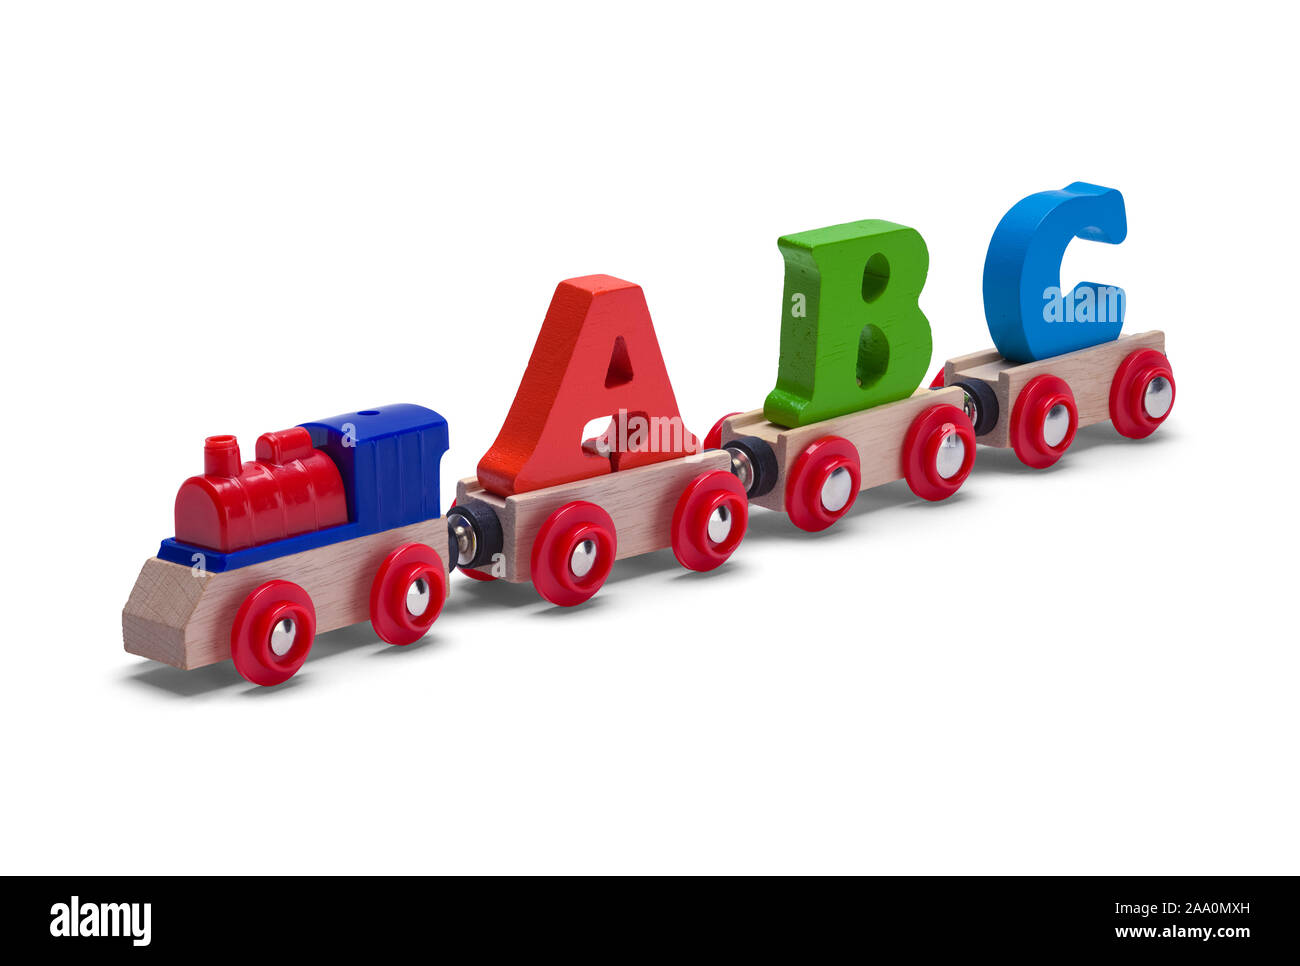 ABC Wood Toy Train Isolated on White Background. Stock Photo